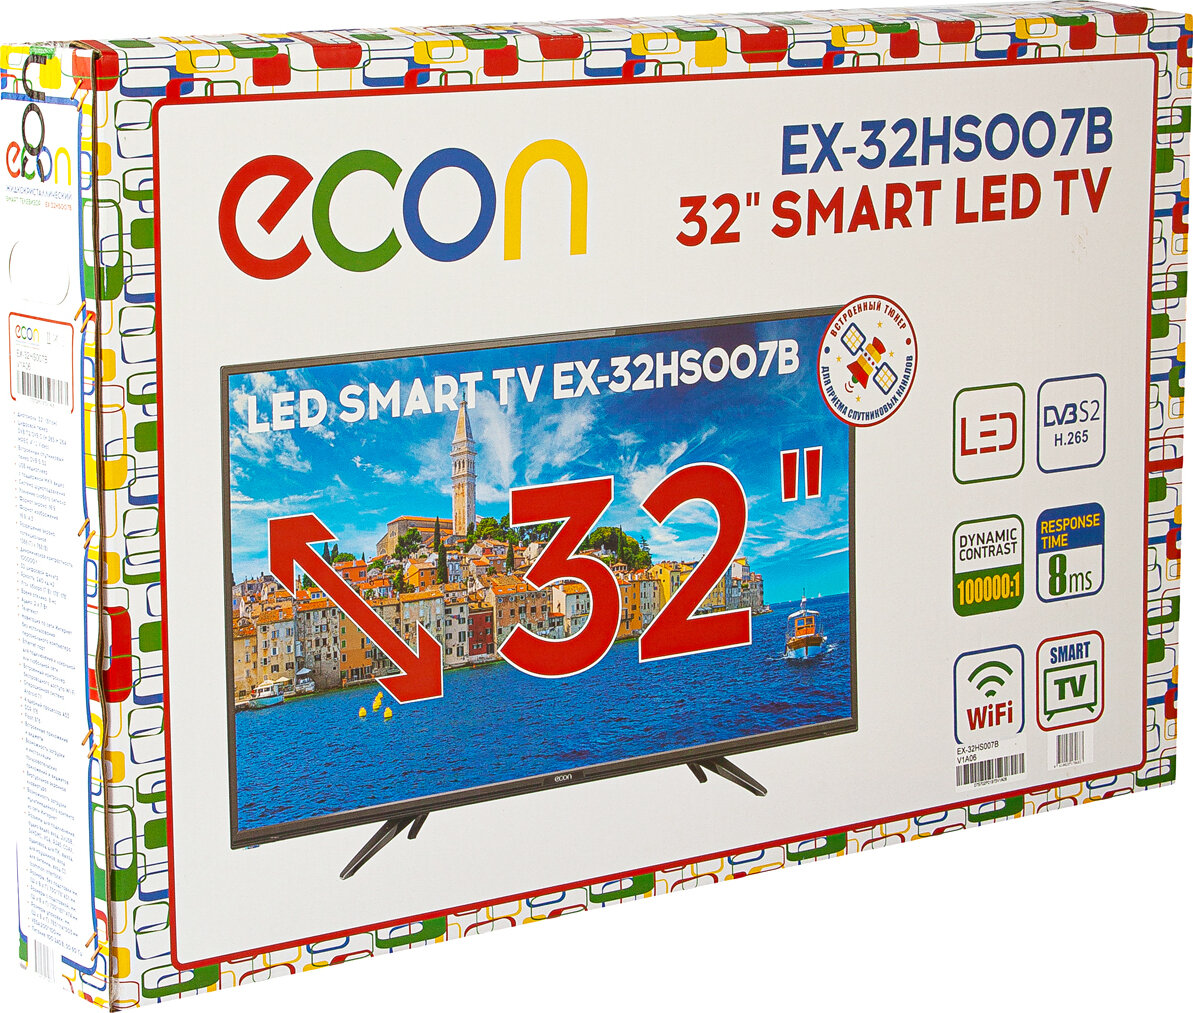 Телевизор ex 32. Телевизор ECON 32 hs007b. Телевизор ECON ex-32ht006b. ECON телевизор ex43fs005b. Телевизор ECON ex-24ht005b 24" (2019).